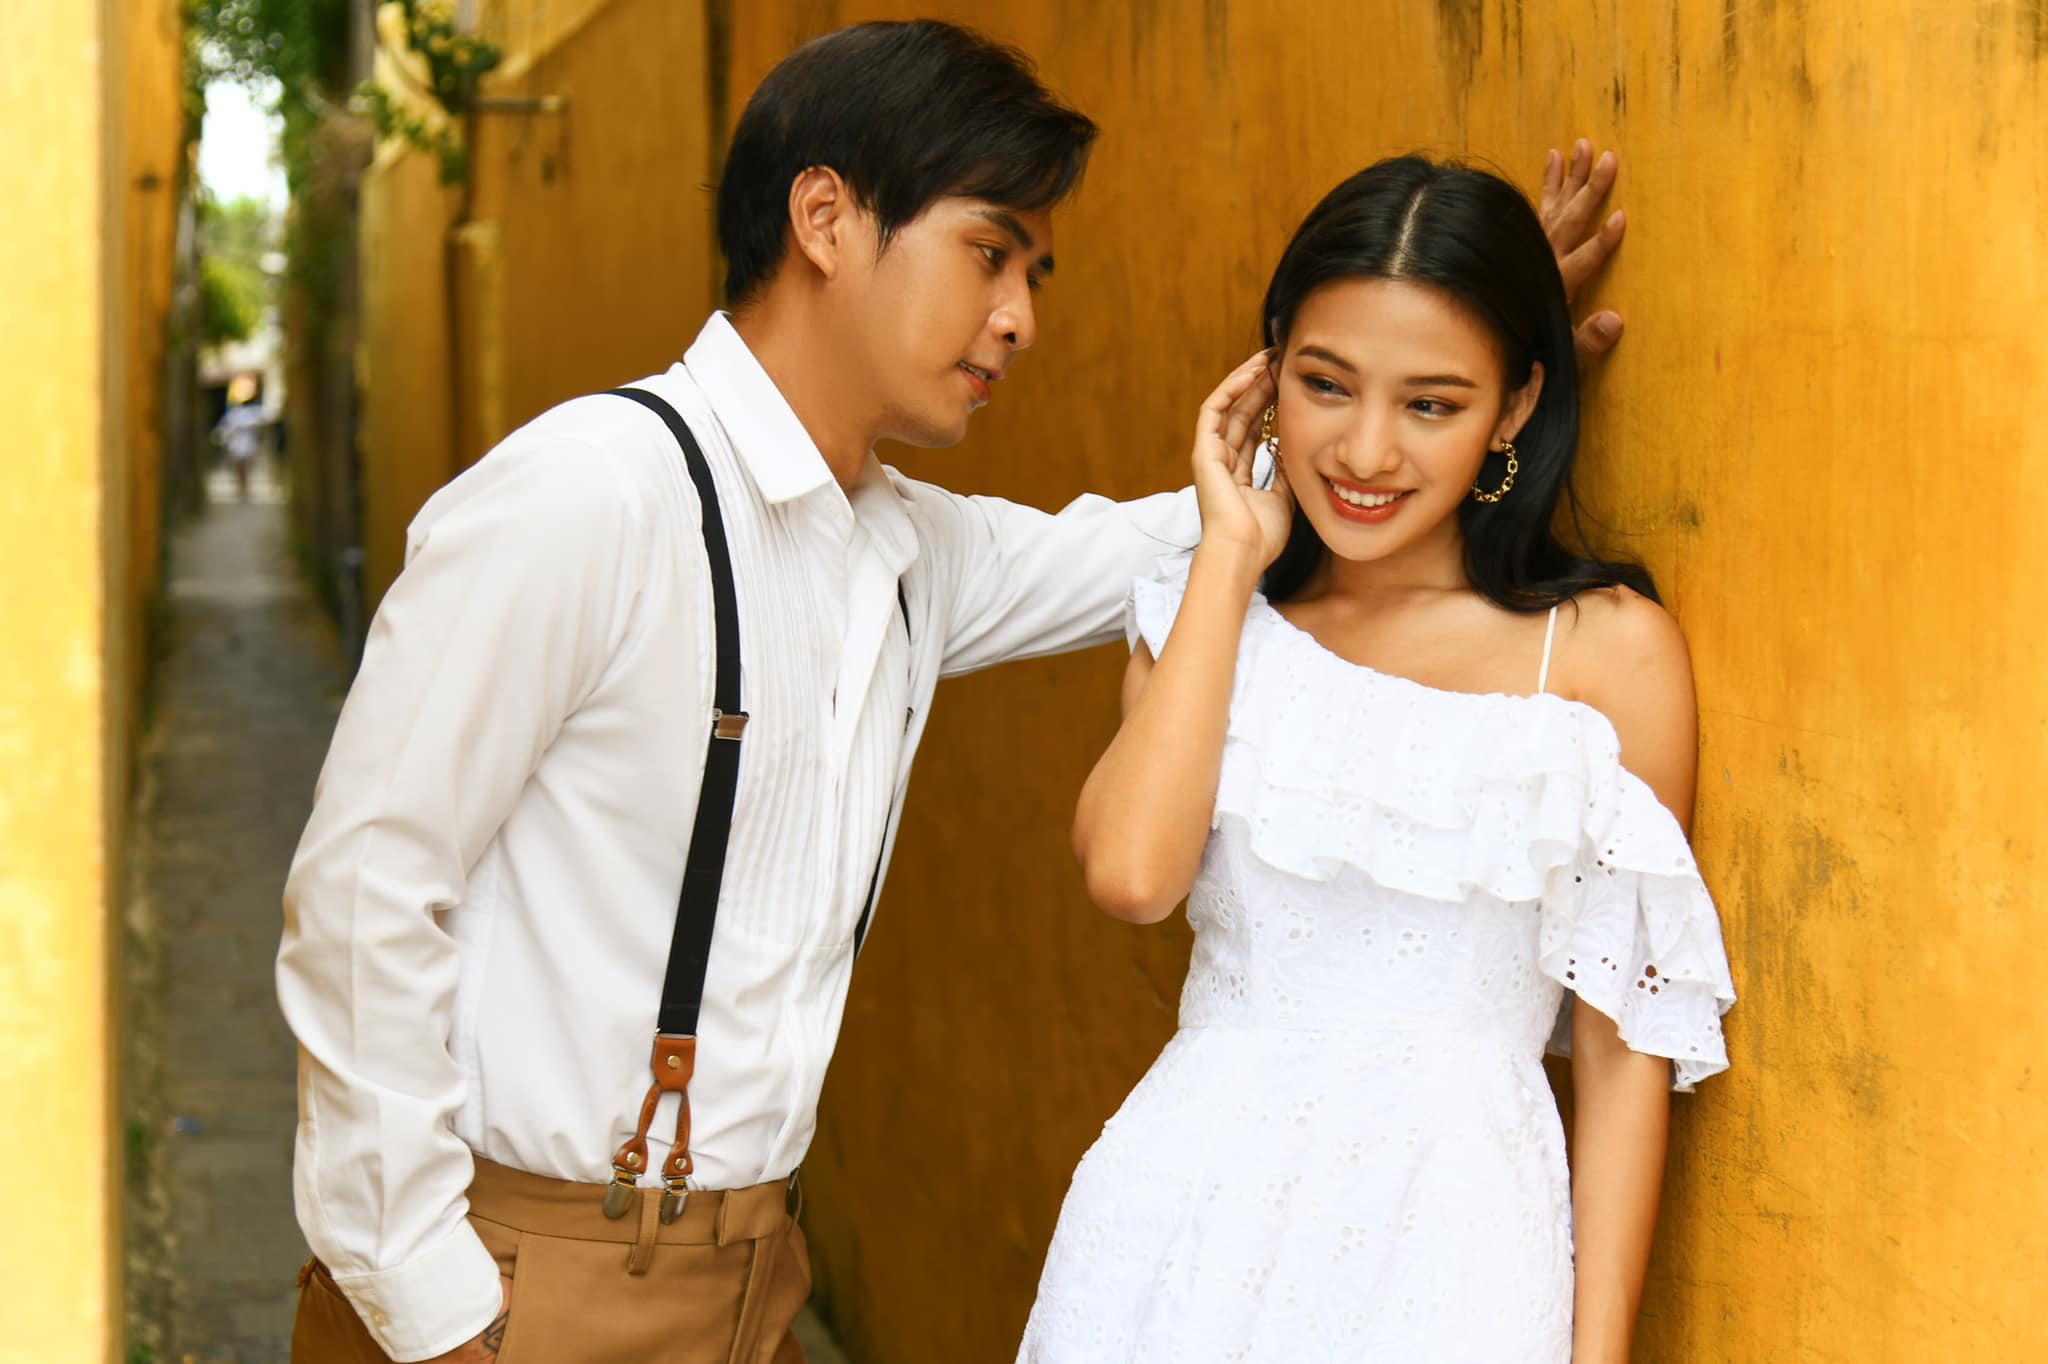 Hồ Quang Hiếu sau chia tay Bảo Anh: “Tôi đang yêu diễn viên trẻ, sẽ cưới trong năm nay” - 3